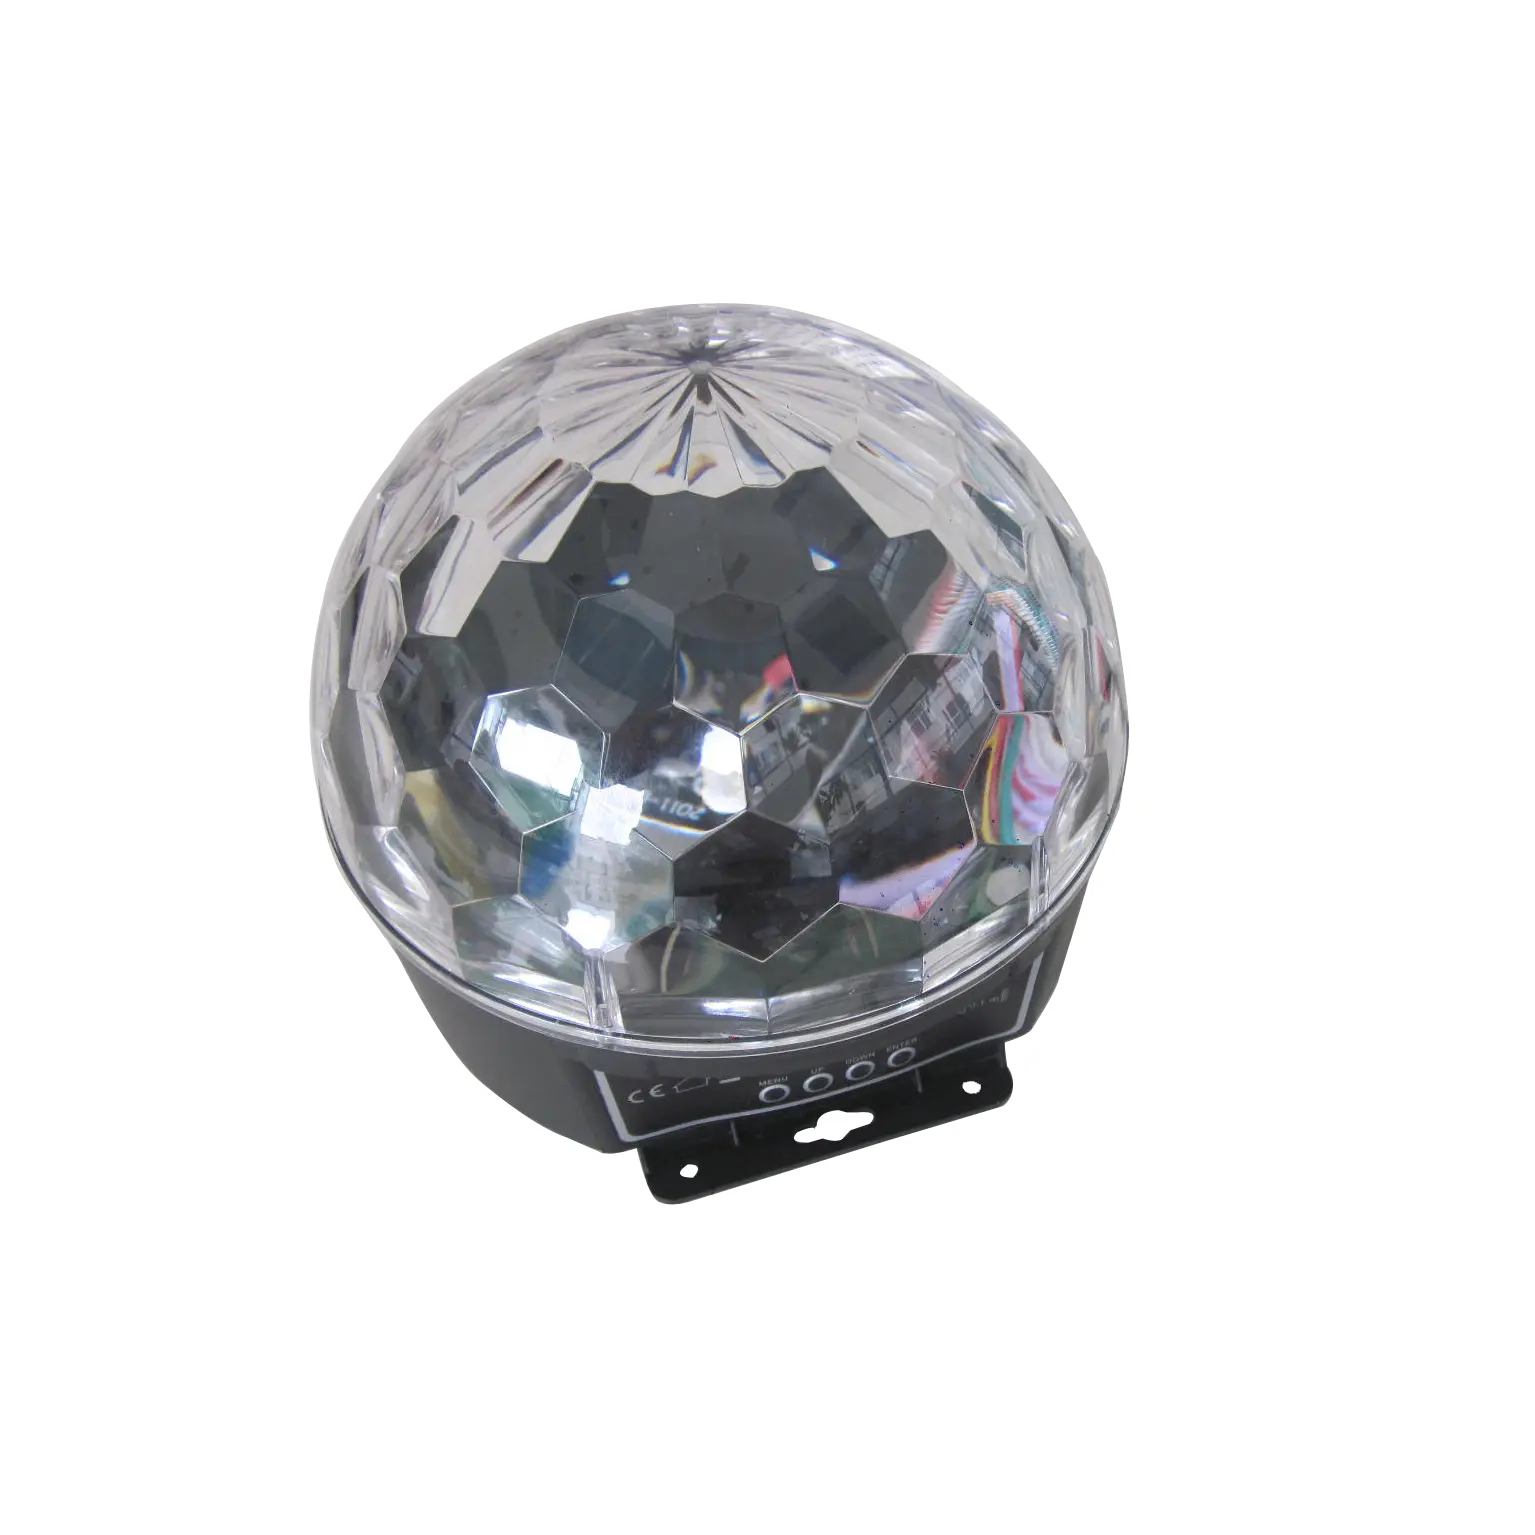 Lâmpada de led para palco dipper betopper, grande, aparelhos decorativos, uplight, cristal, mágica, iluminação de palco, luz de discoteca